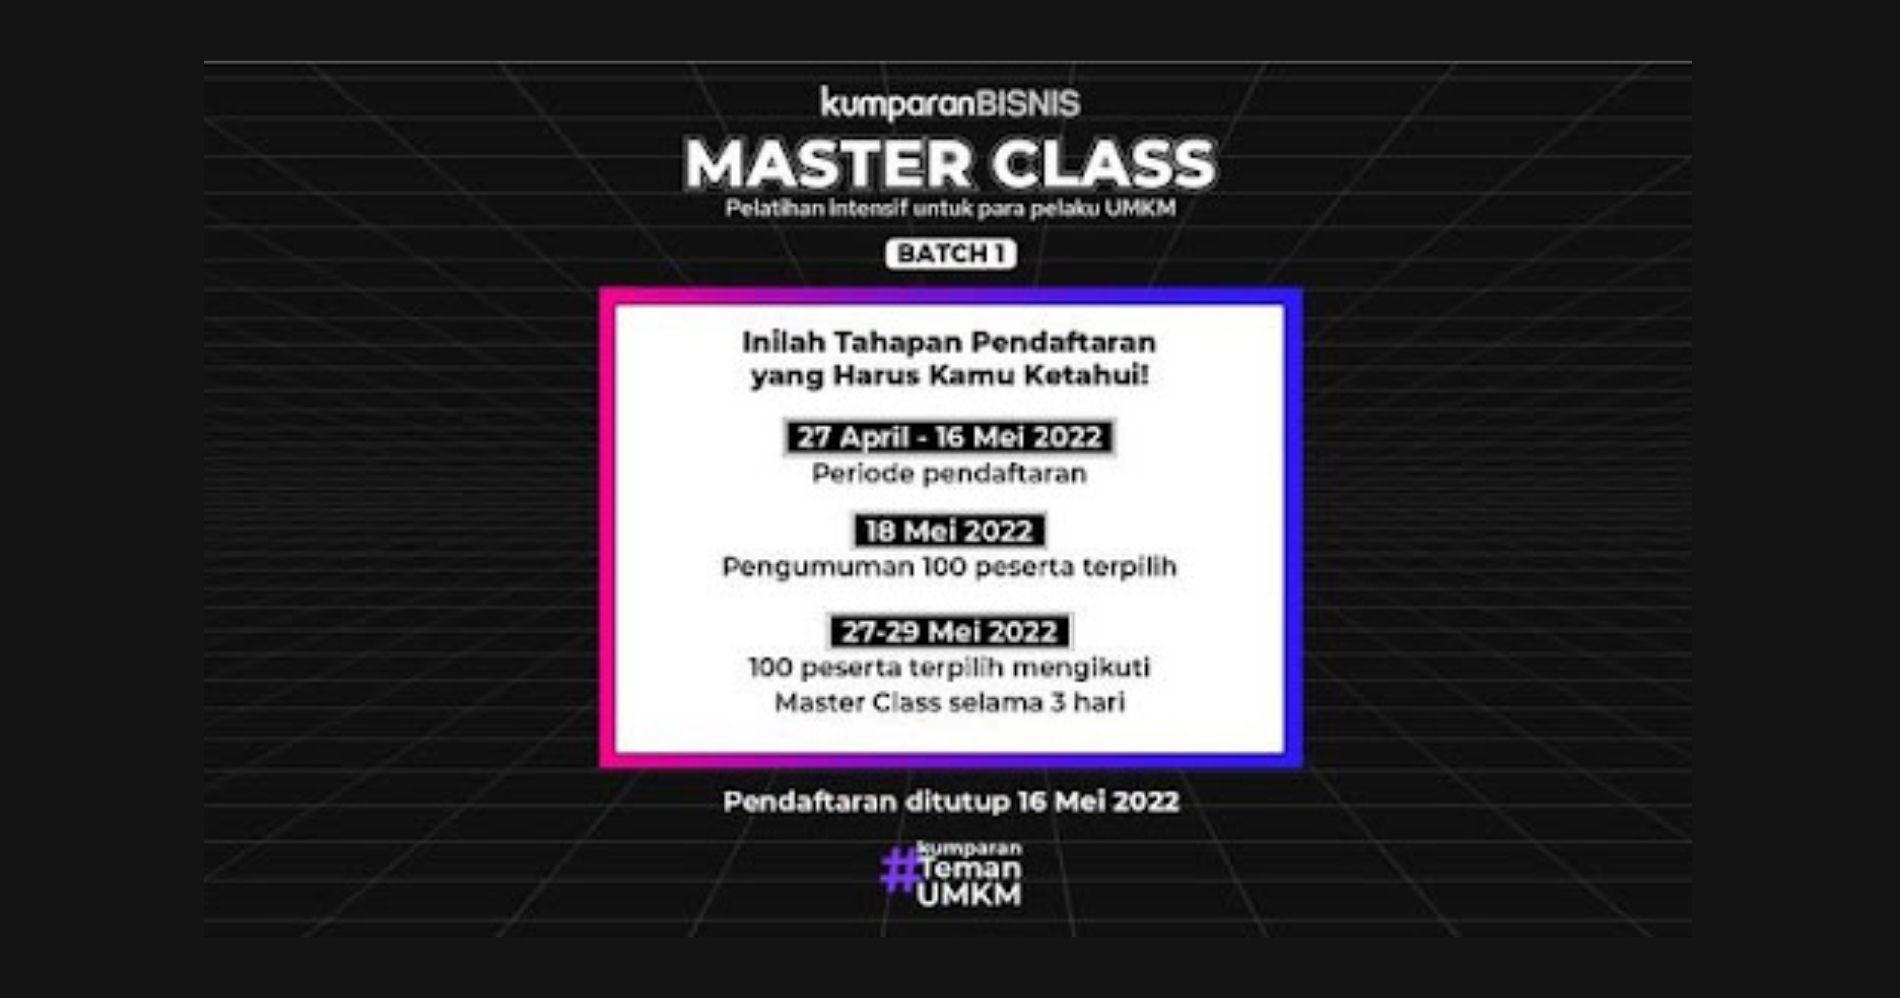 Cara Ikut Program Master Class 2022 #KumparanTemanUMKM - Image: Kumparan